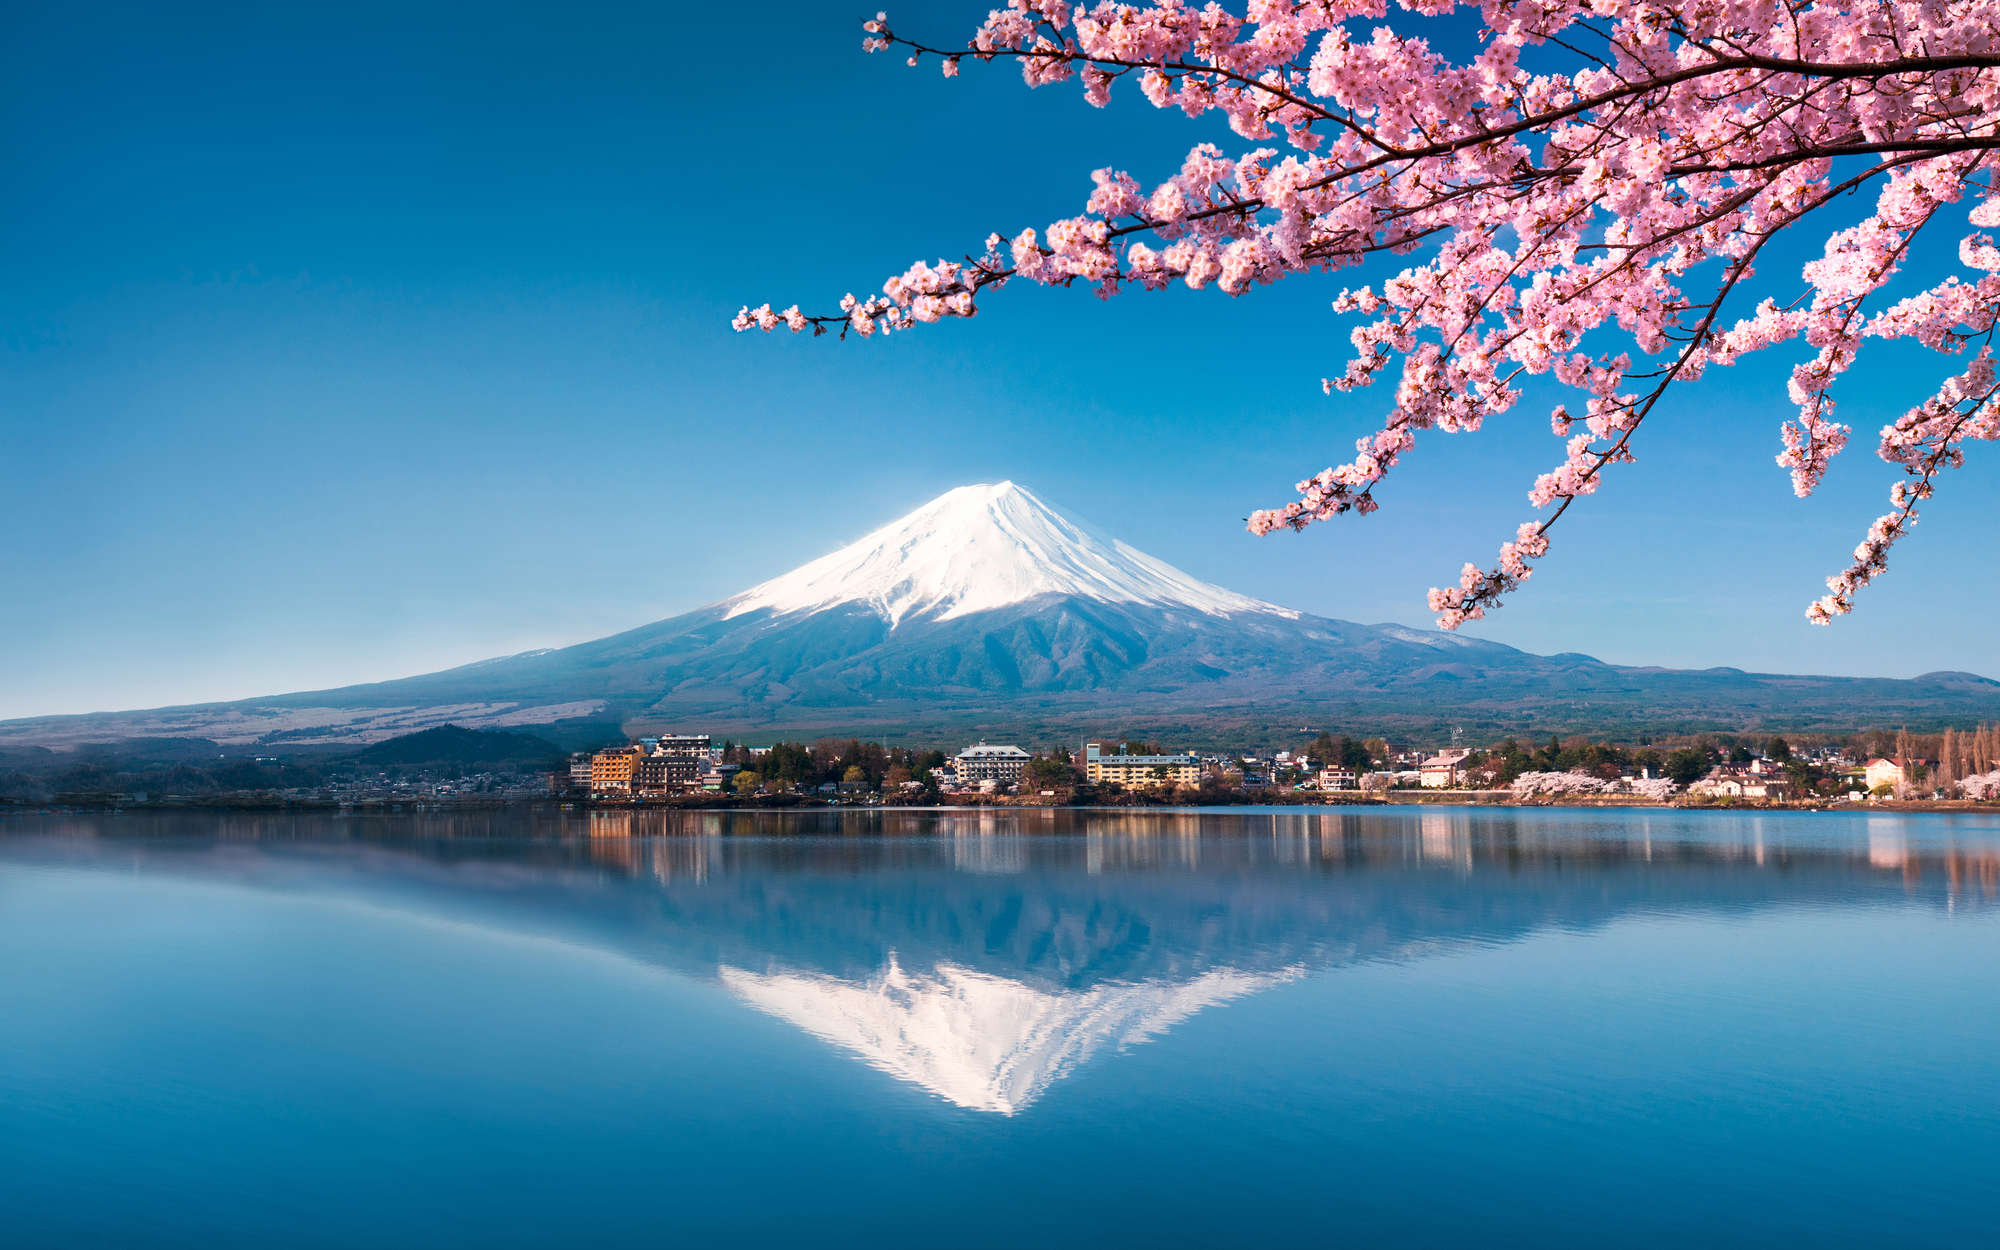             papiers peints à impression numérique volcan Fuji au Japon - Premium intissé lisse
        